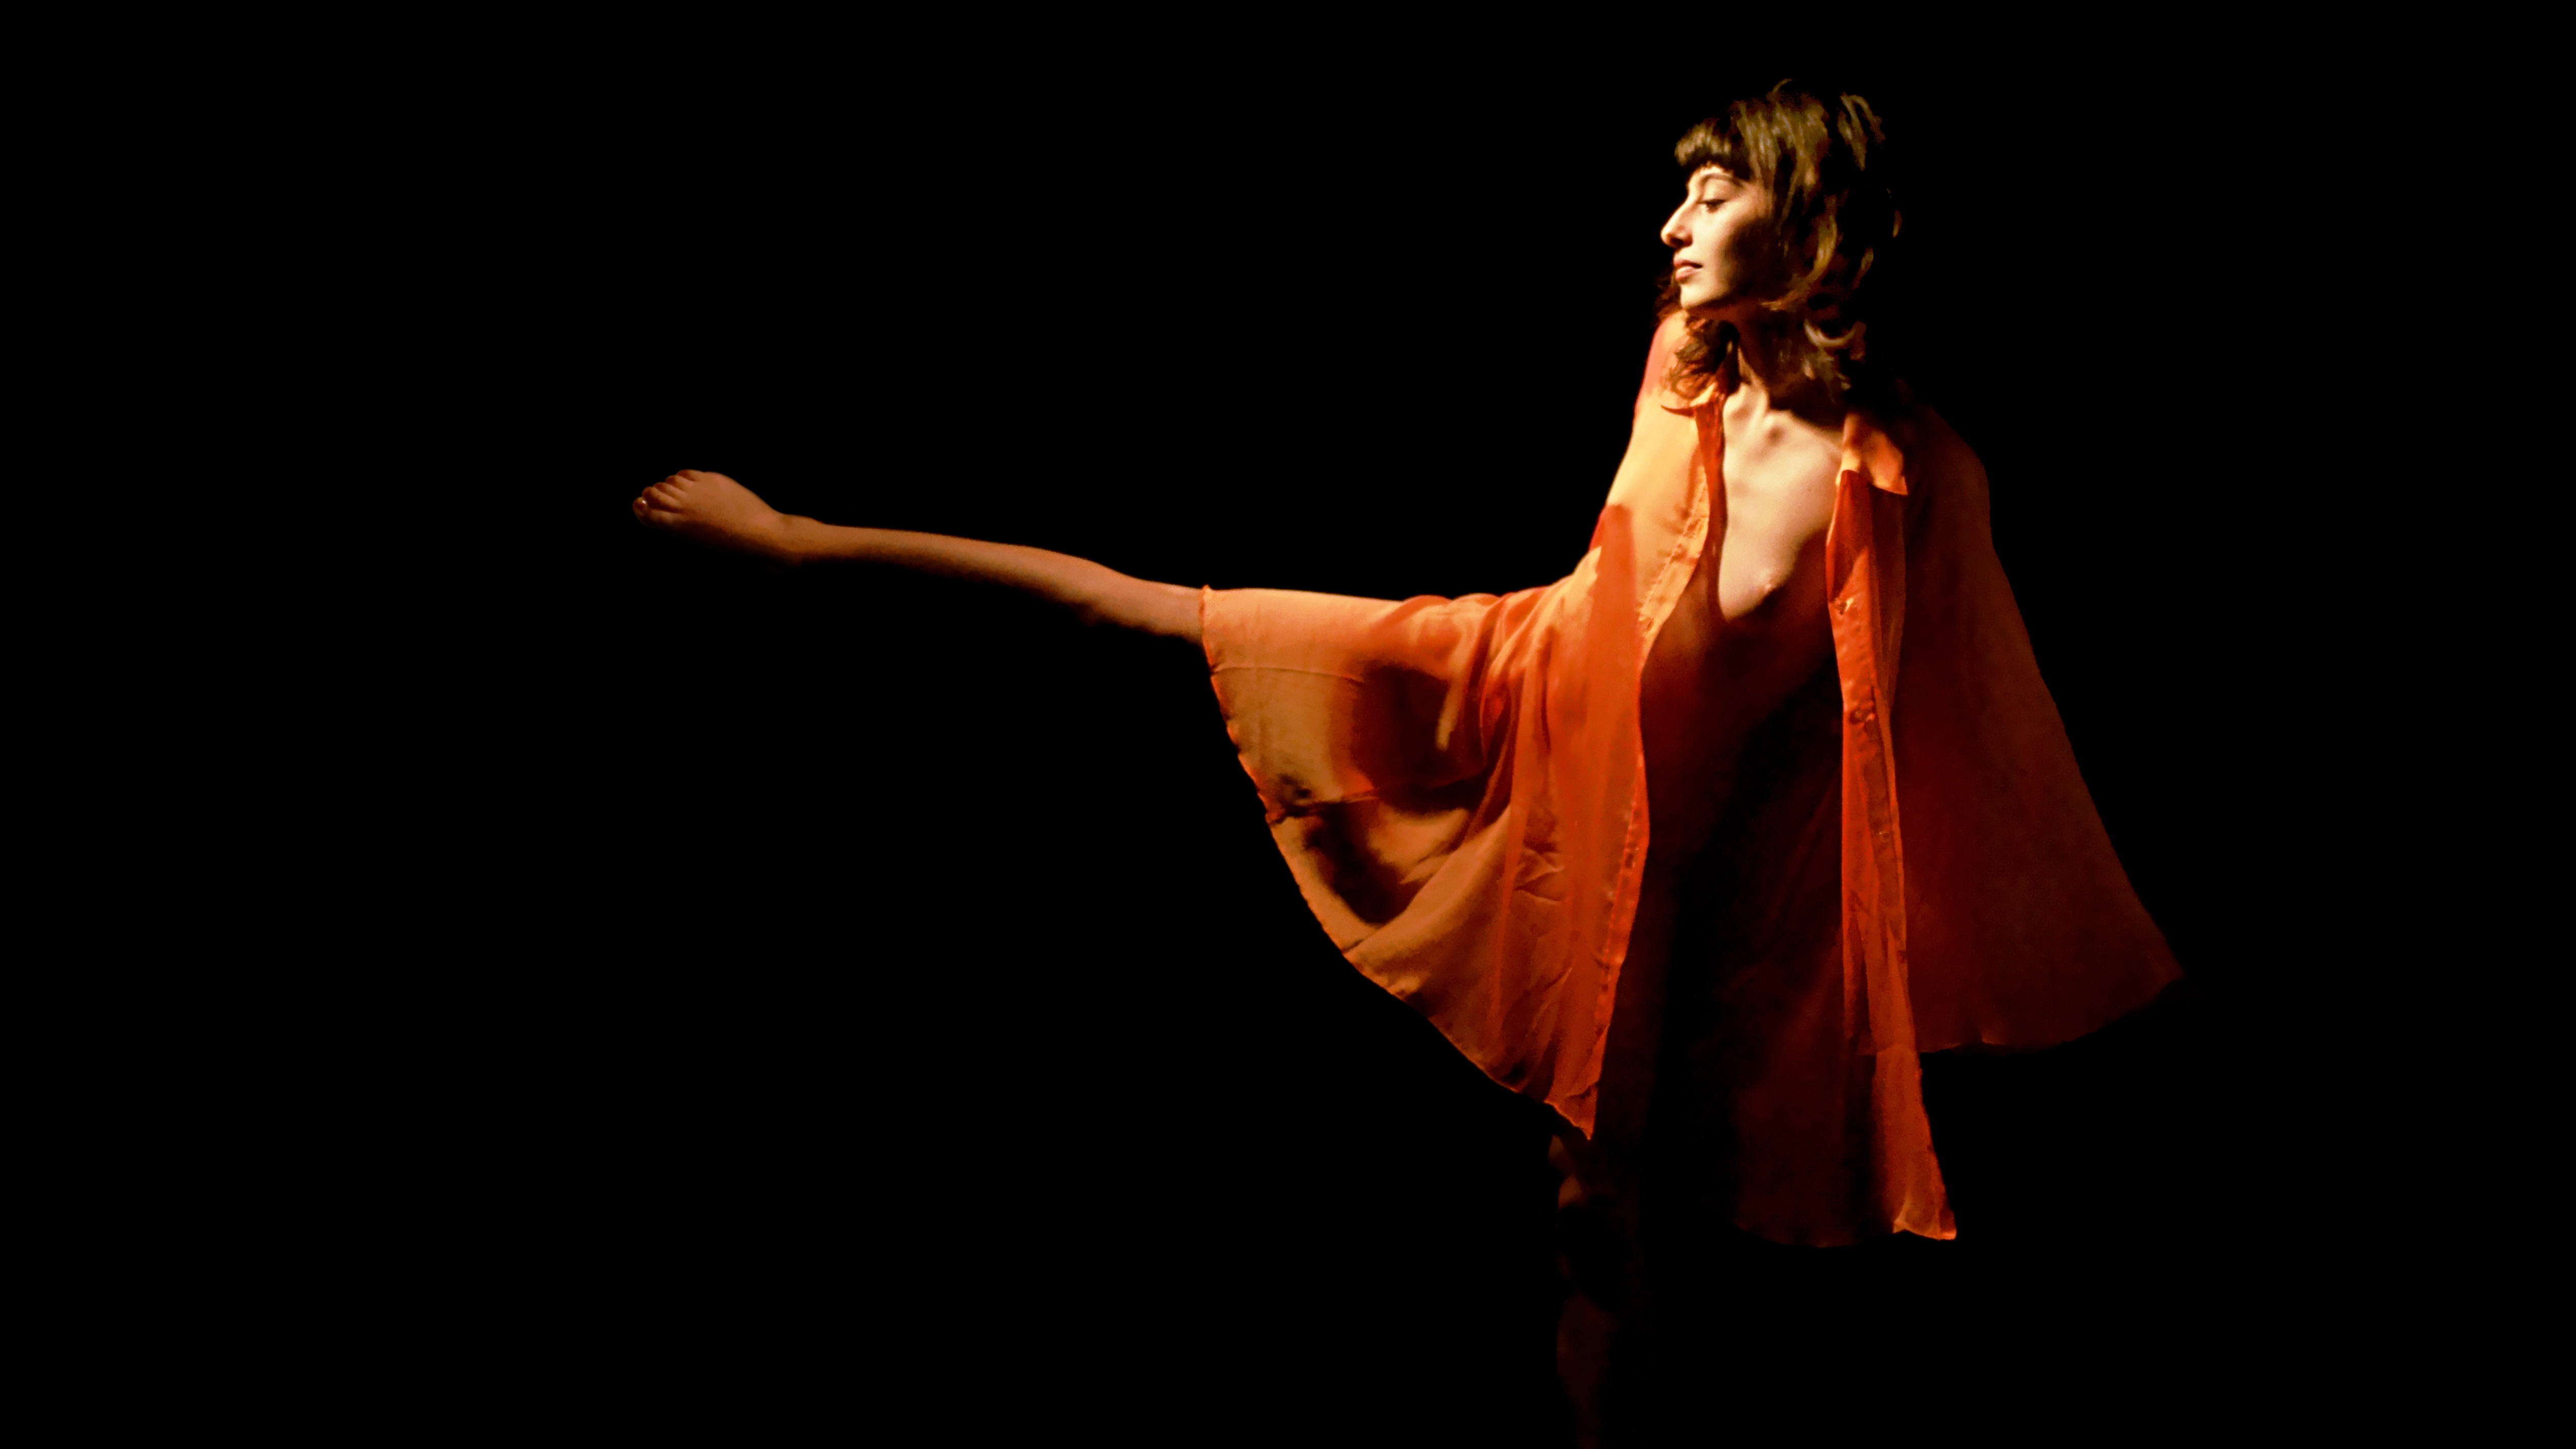 Maeva, nue sous une tunique orange transparente, danse. Sa jambe tendue sur le côté fait penser à une aiguille d'horloge enveloppée dans une cape orange.